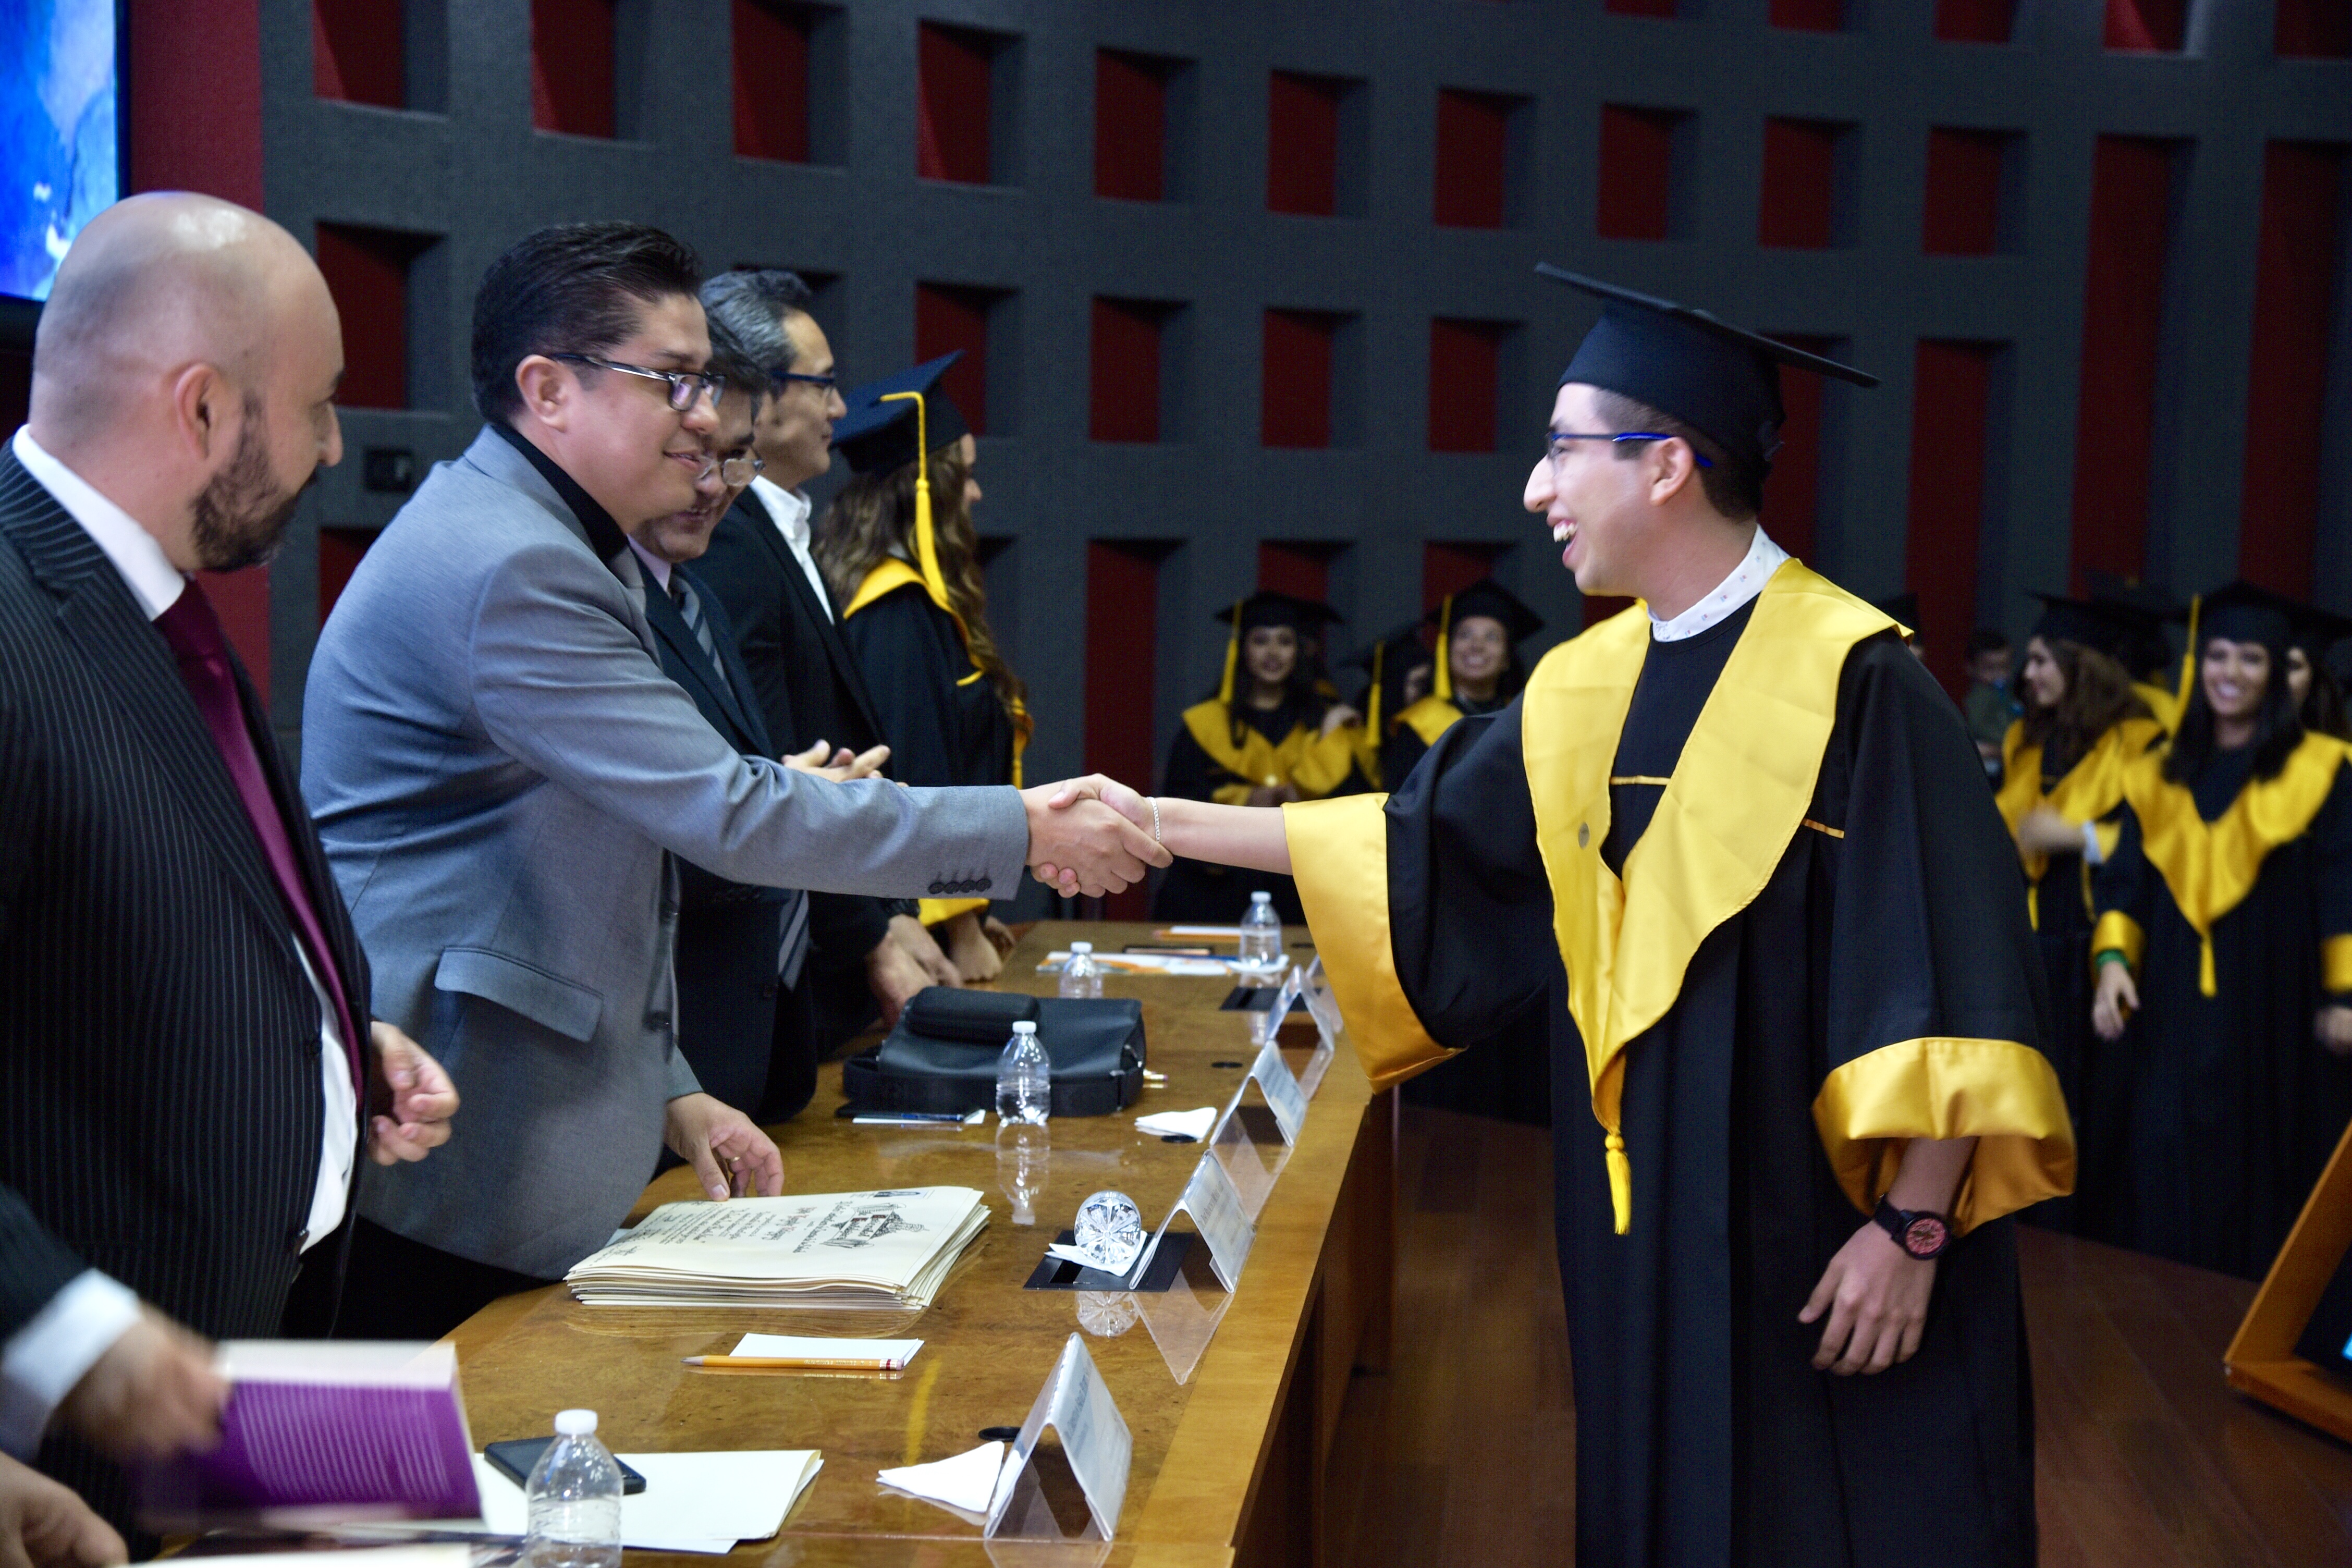 Rector entregando carta a graduado saludándolo de mano